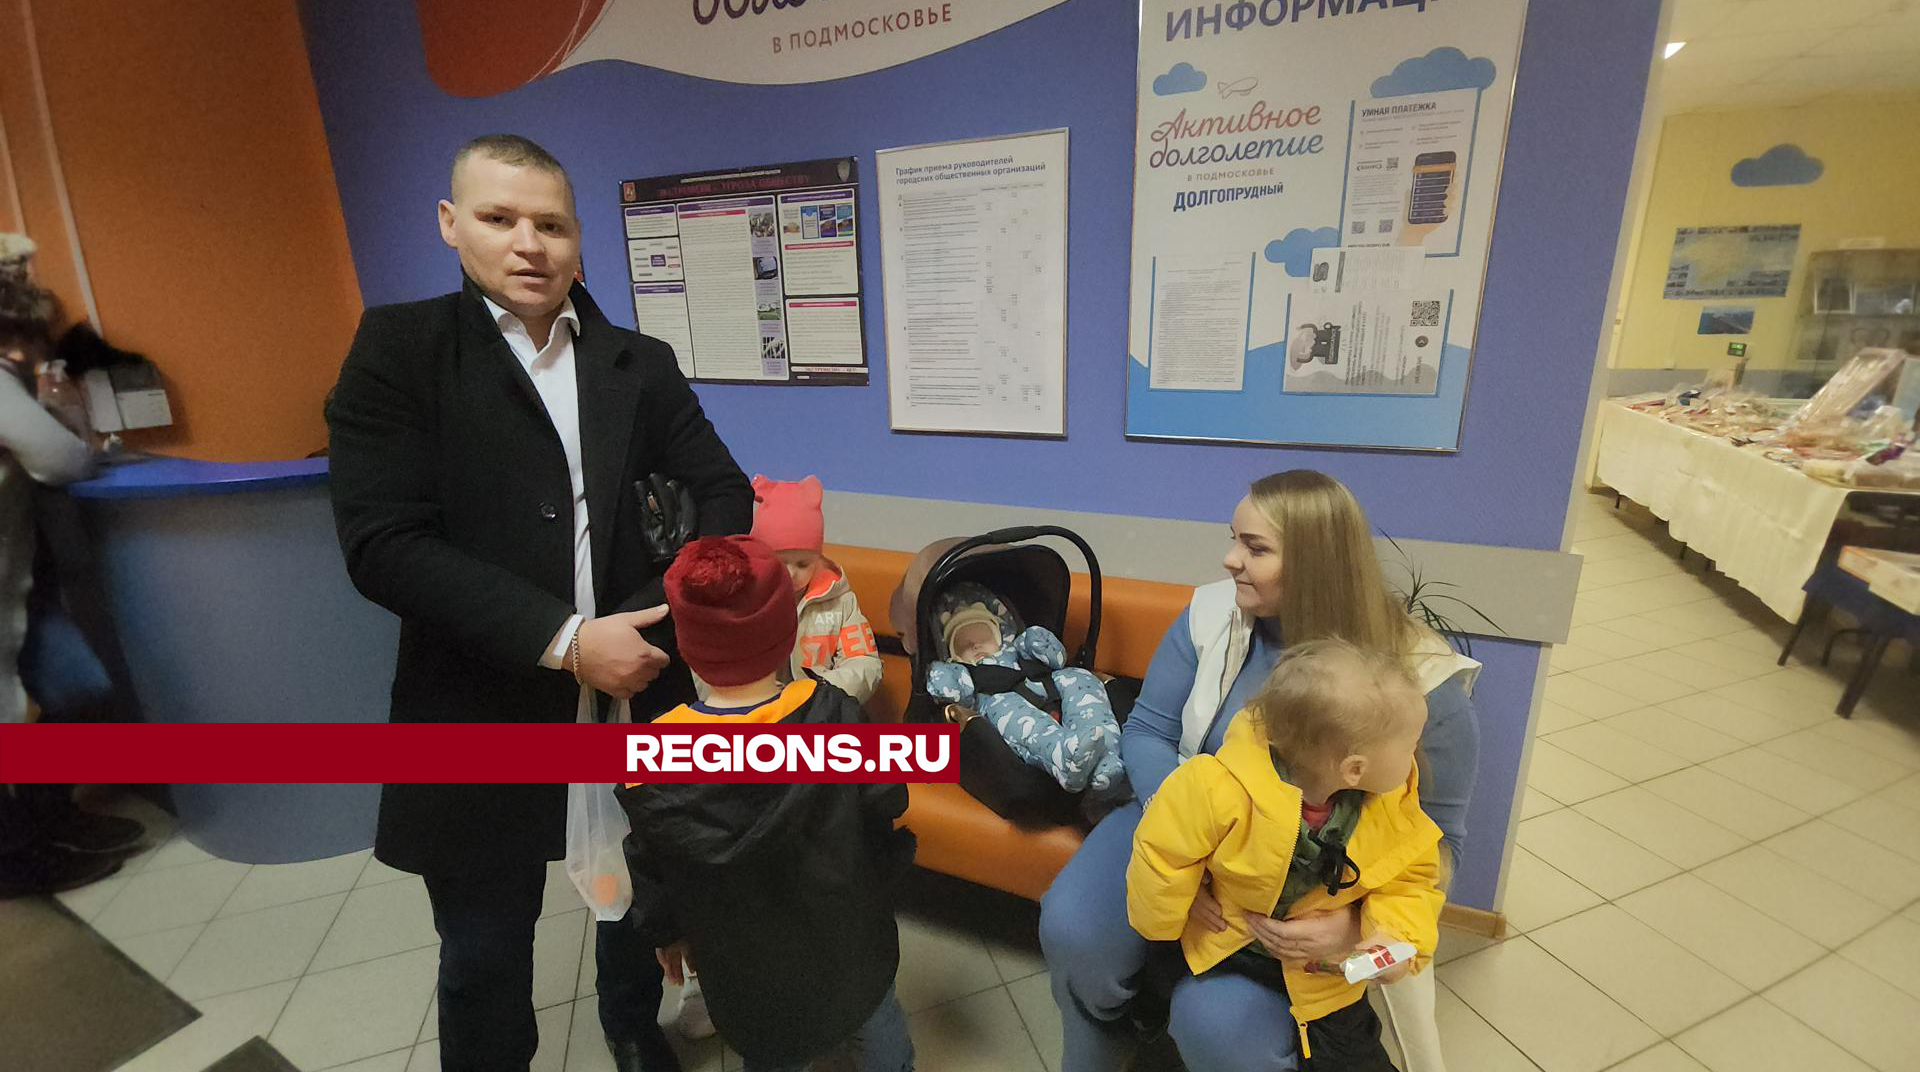 «На выборы – всей семьей»: многодетный отец Николай Гаврилов пришел на голосование вместе с женой и детьми